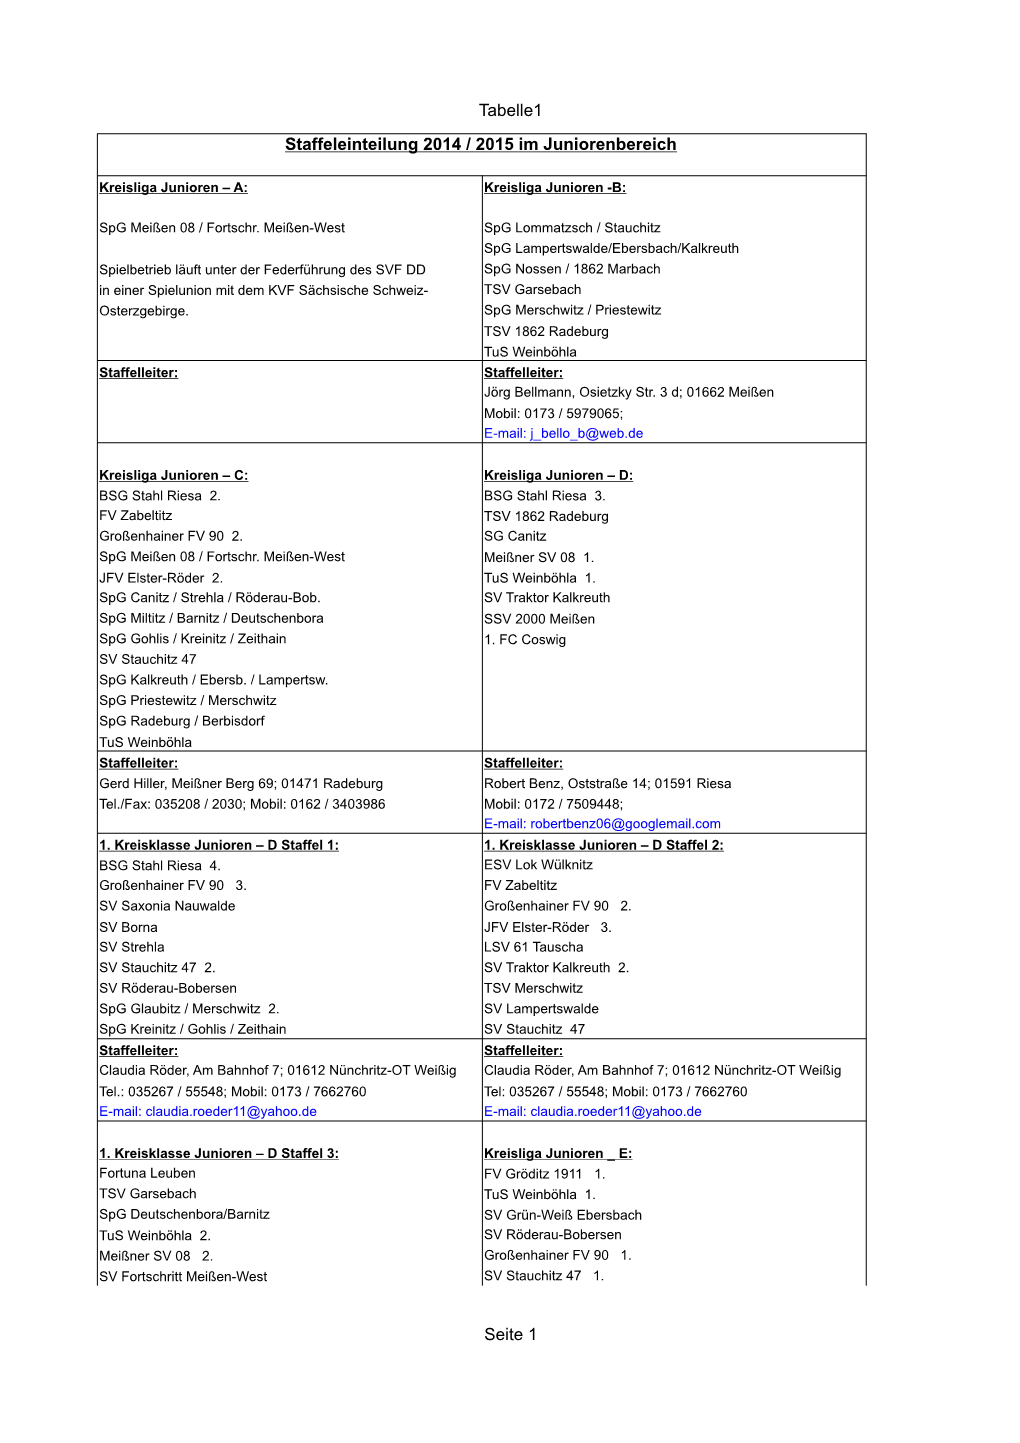 Tabelle1 Seite 1 Staffeleinteilung 2014 / 2015 Im